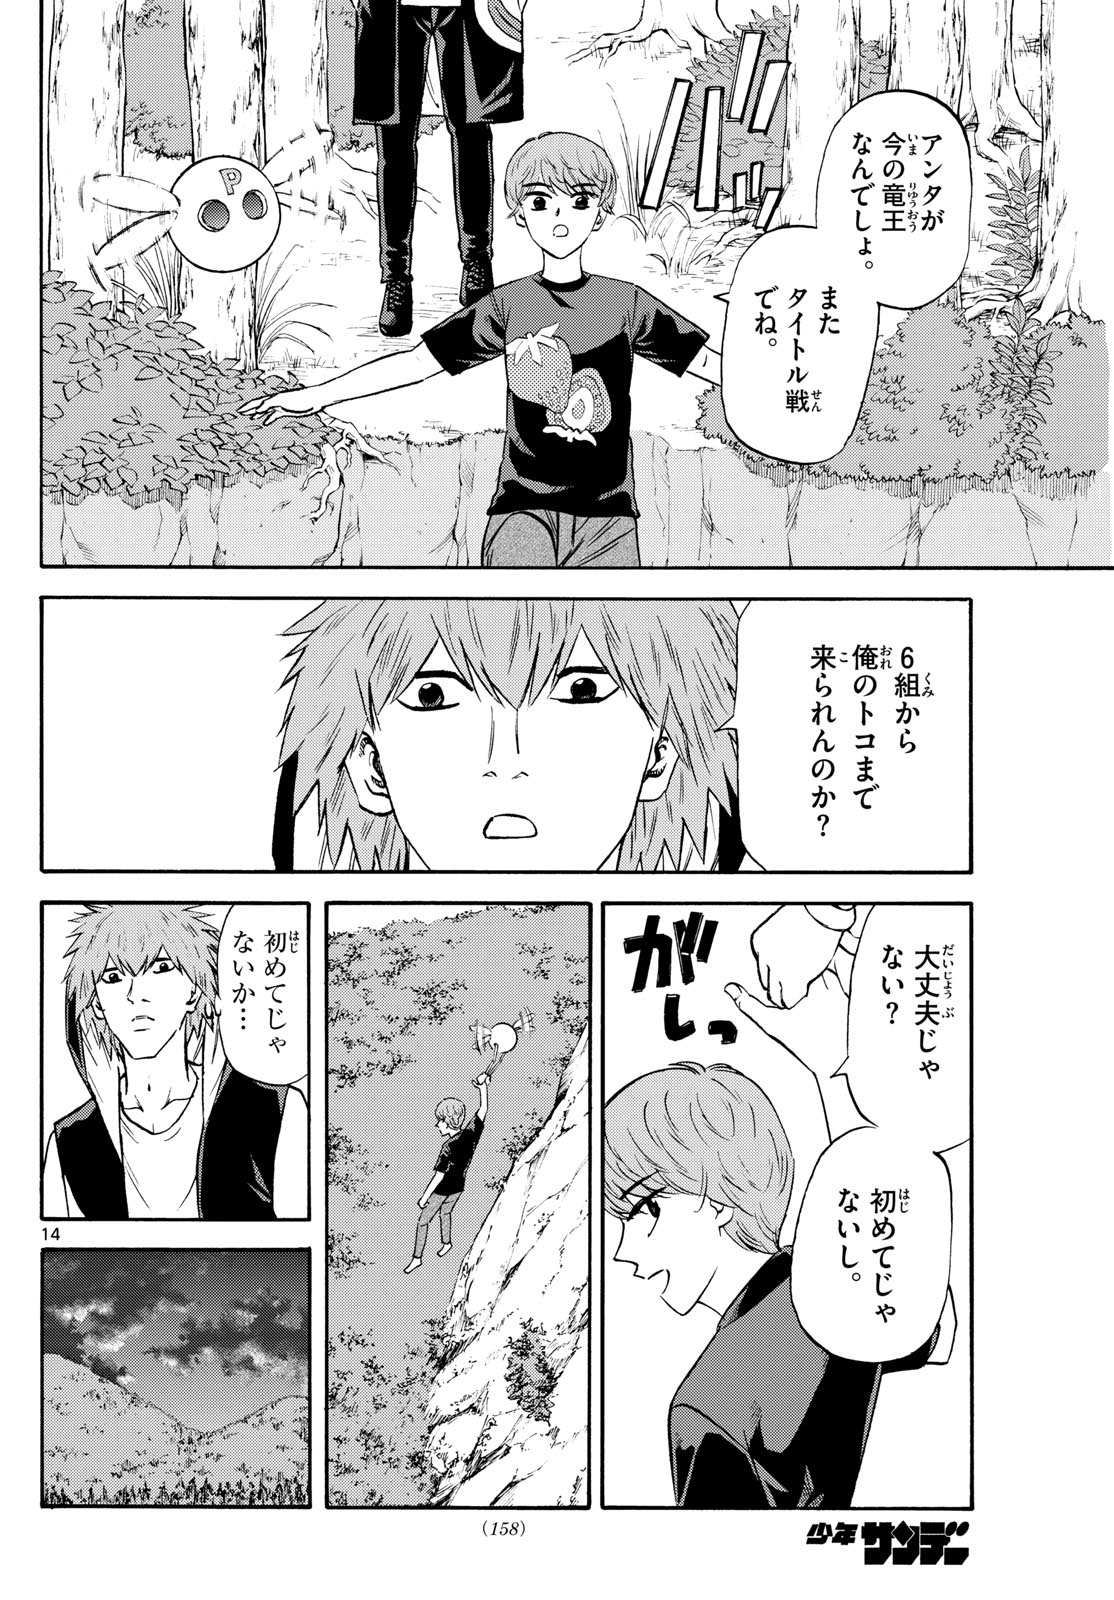 Tatsu to Ichigo - Chapter 195 - Page 14